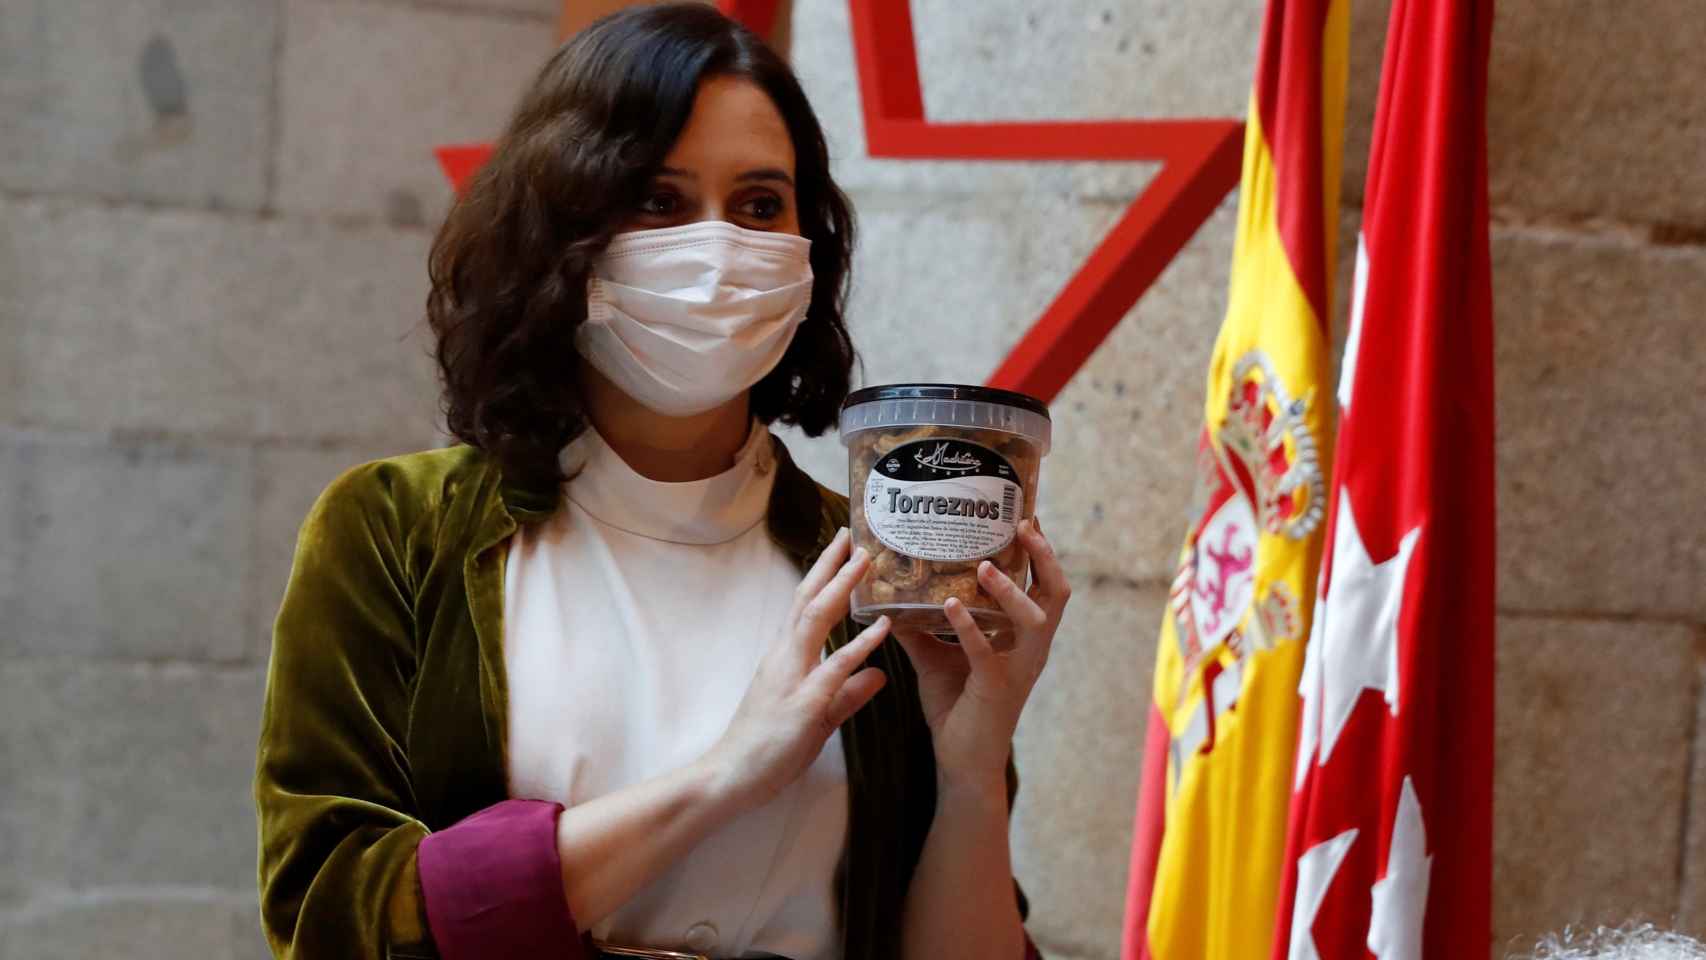 La presidenta de la Comunidad de Madrid, sujetando un bote de torreznos de La Madrileña.